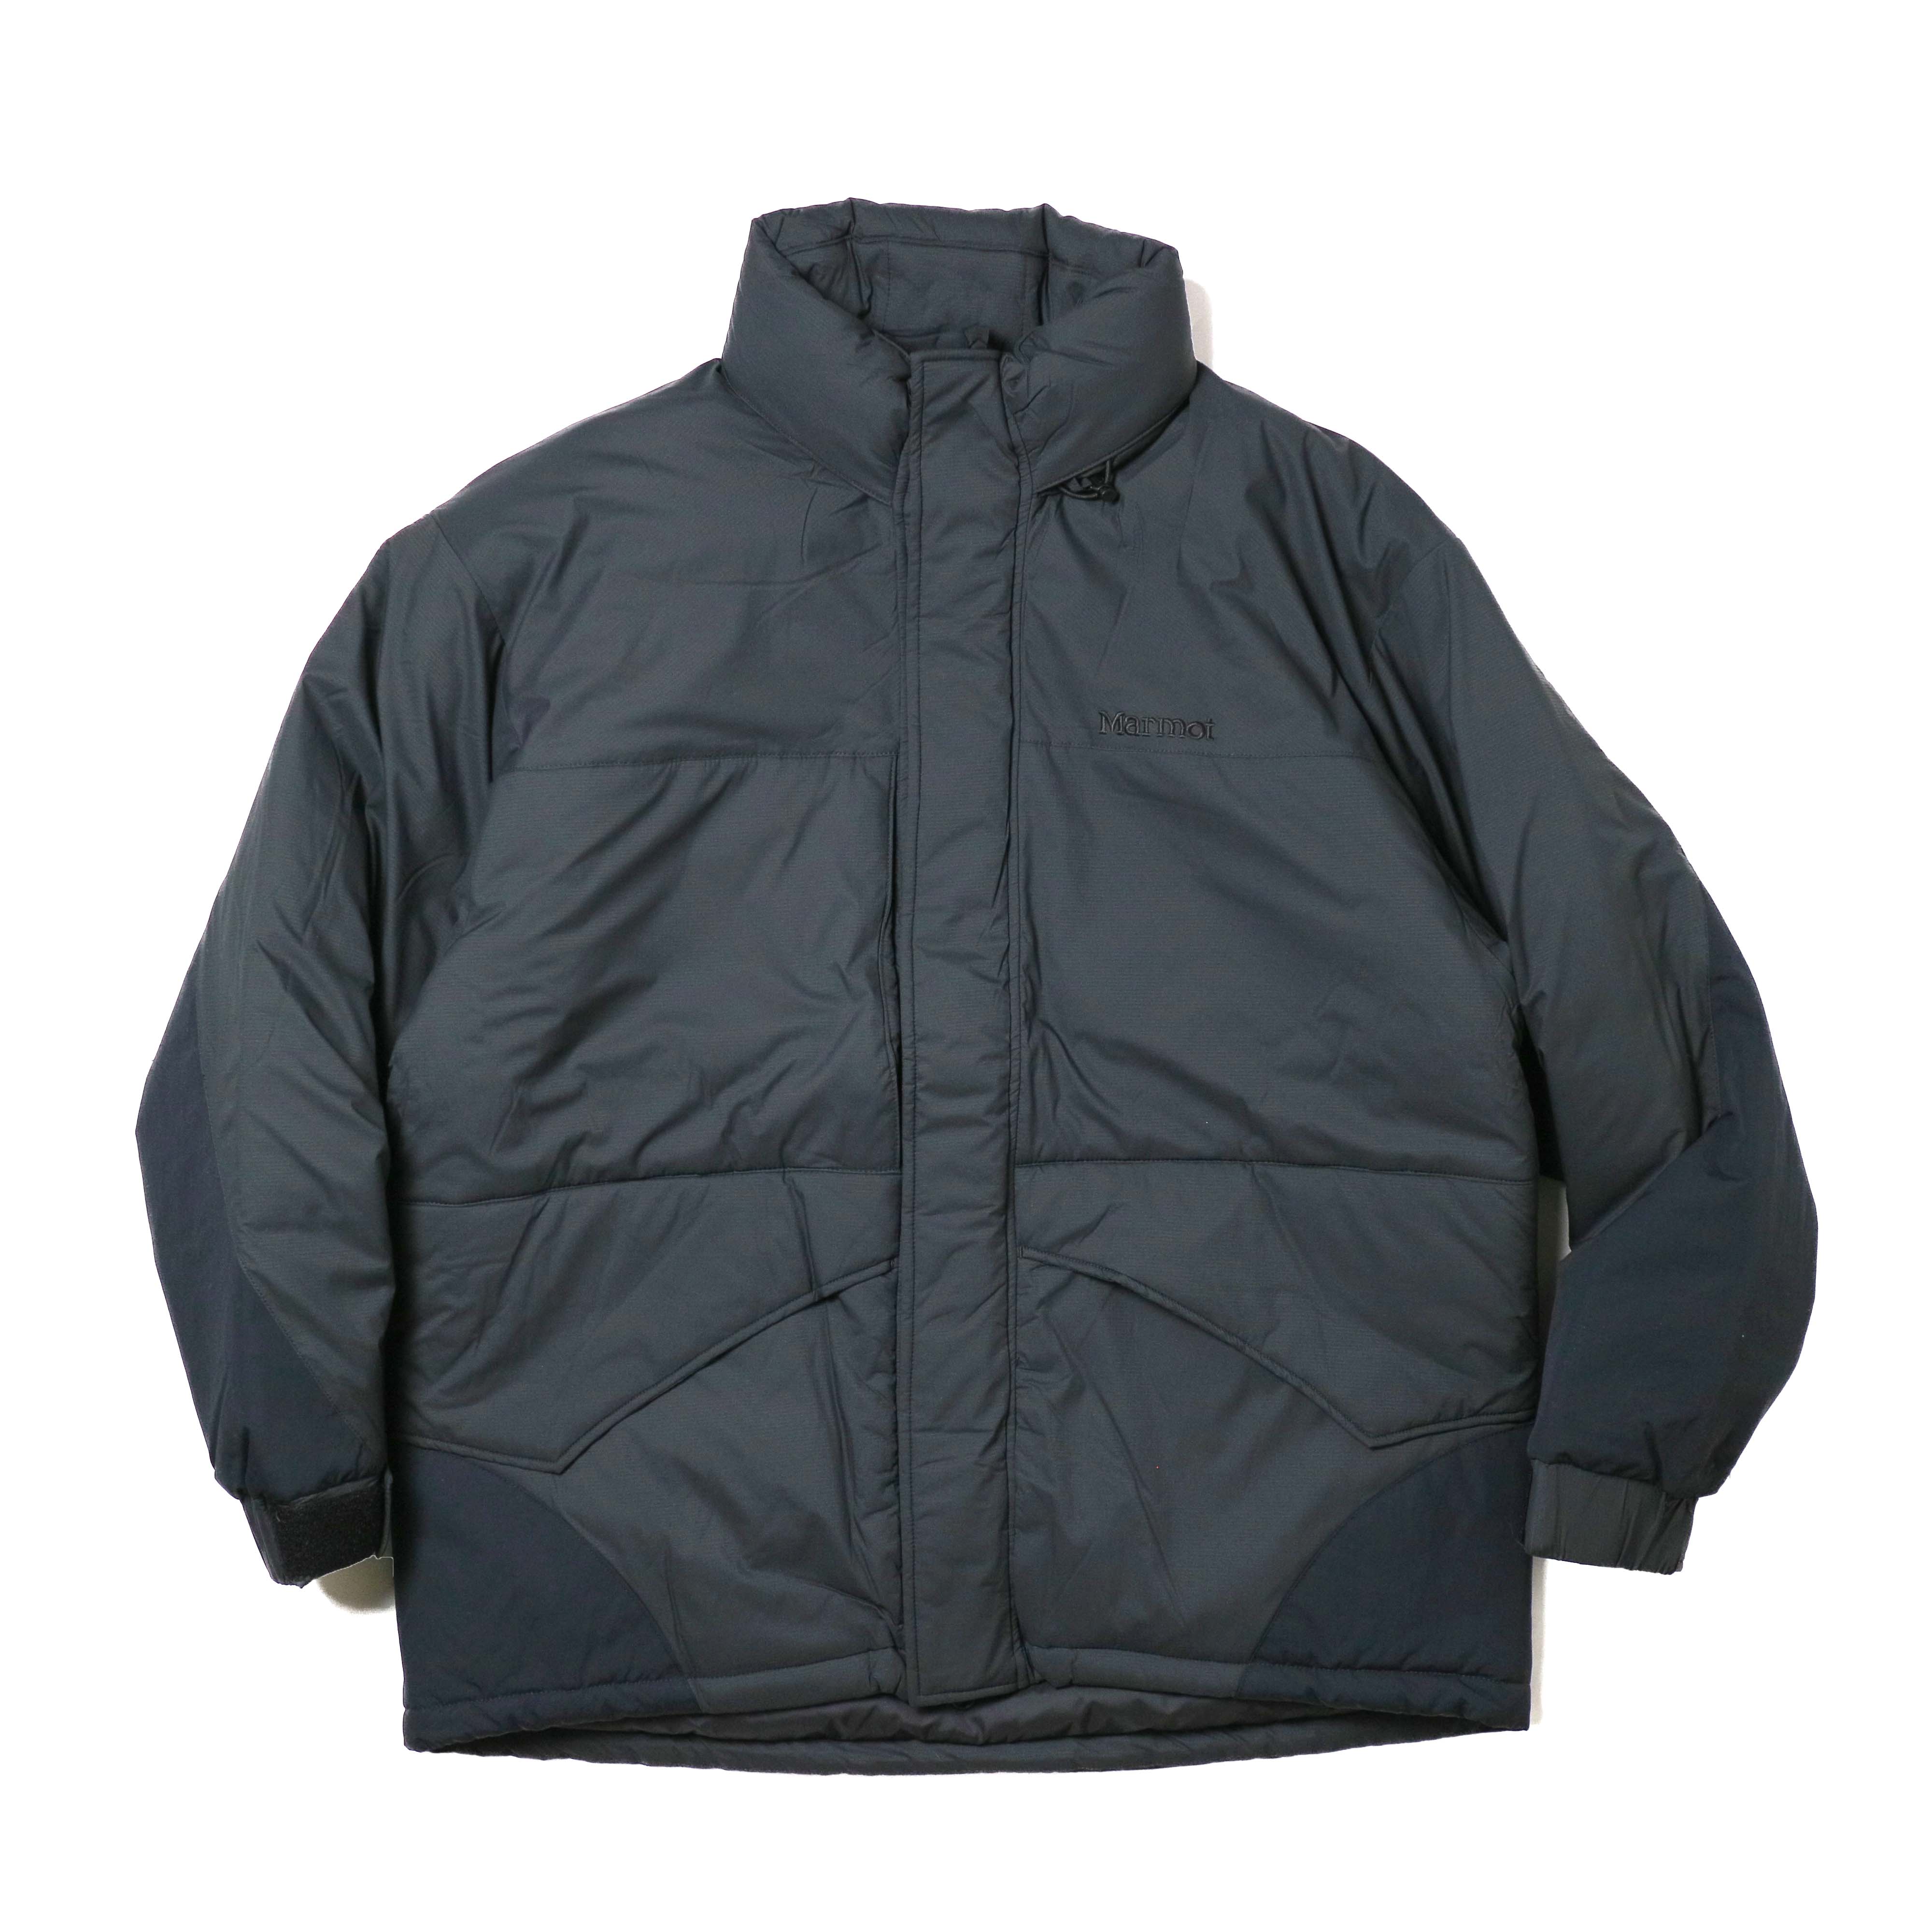 Marmot / Randonnee Loft Jacket (Black)